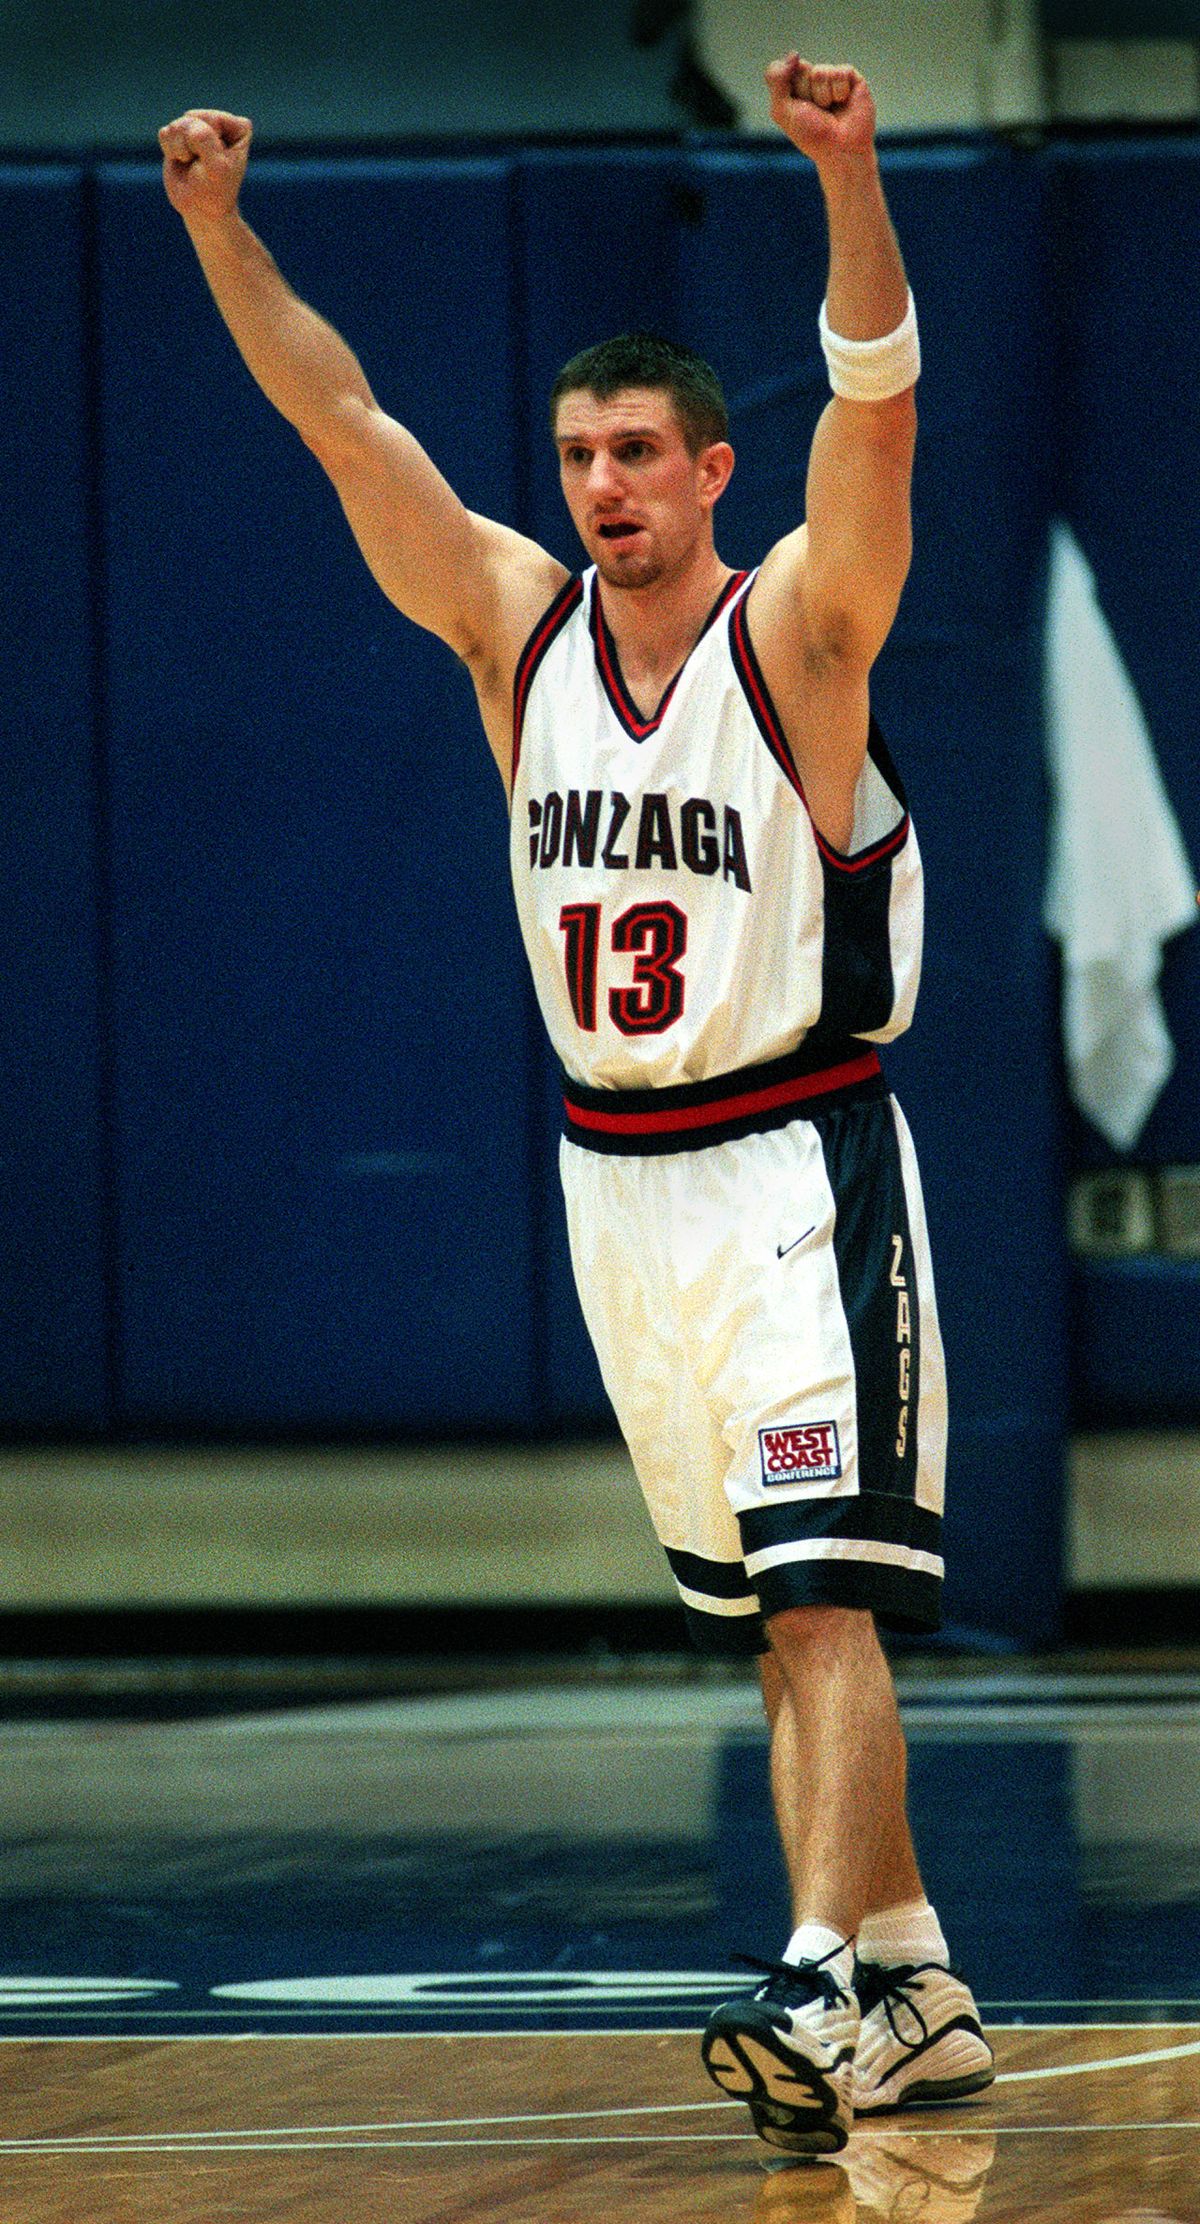 Former Gonzaga basketball star Matt Santangelo, shown here in game against Santa Clara in 2000, was named the Hoopfest director on Wednesday. (Dan Pelle)